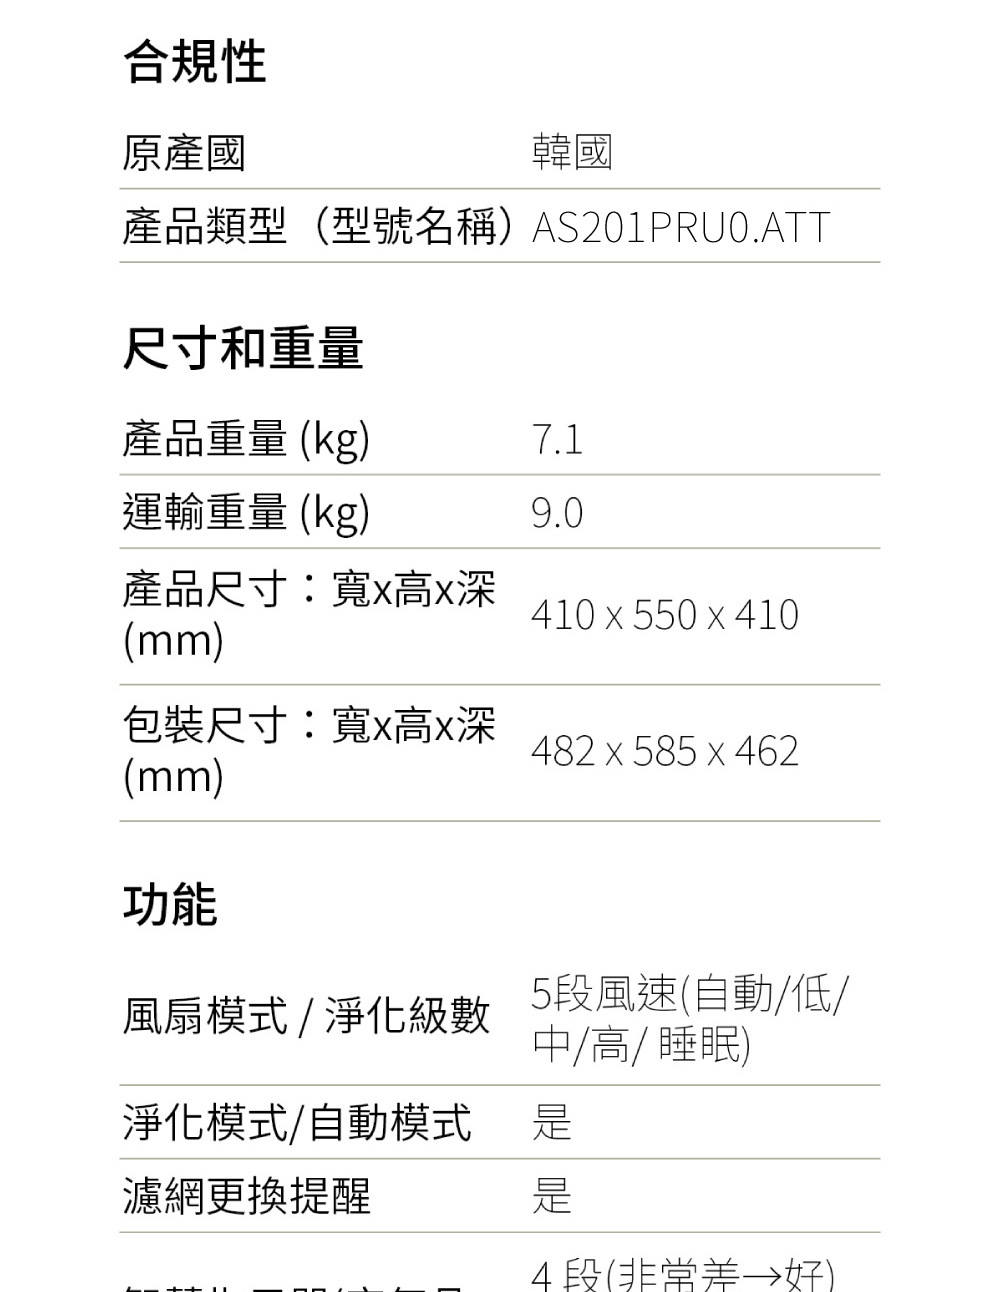 合規性原產國韓國產品類型(型號名稱AS201PRU0.ATT尺寸和重量產品重量 (kg)運輸重量(kg)9.0產品尺寸:寬高深(mm)410 x 550 x 410包裝尺寸:寬x高x深(mm)482x585x462功能風扇模式/淨化級數5段風速(自動/低/中/高/ 睡眠)淨化模式/自動模式濾網更換提醒4段()